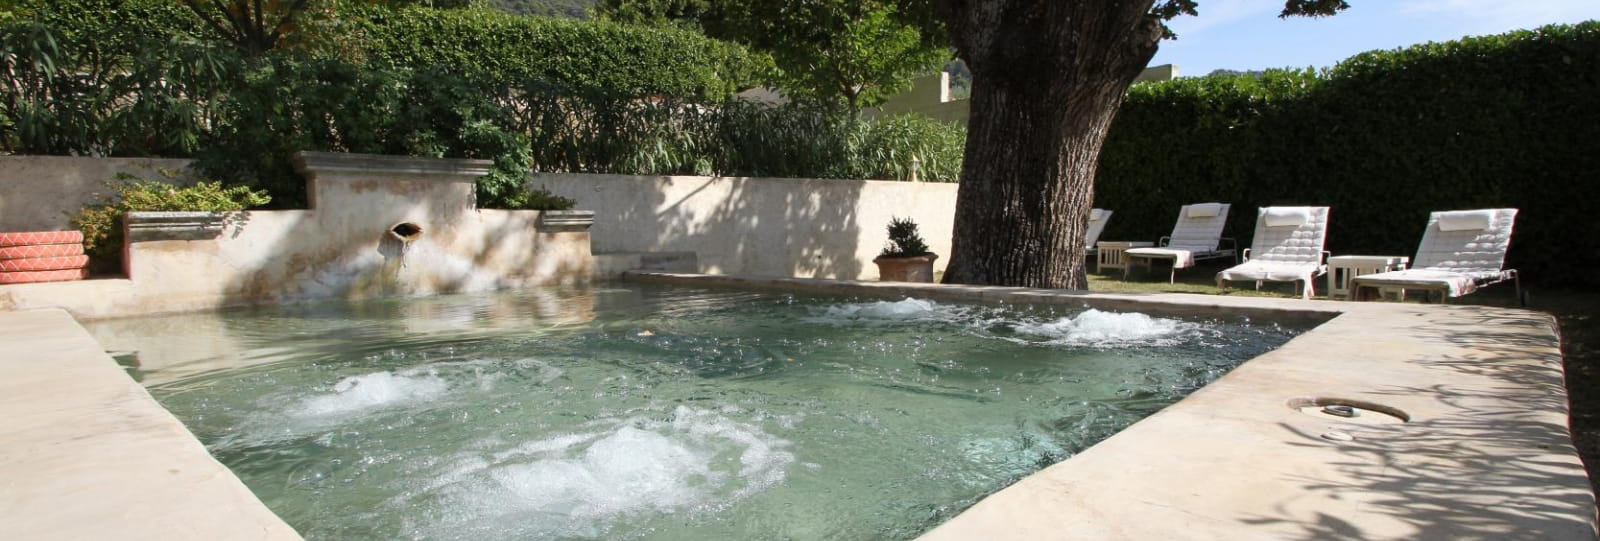 Le bassin fontaine et ses bulles relaxantes